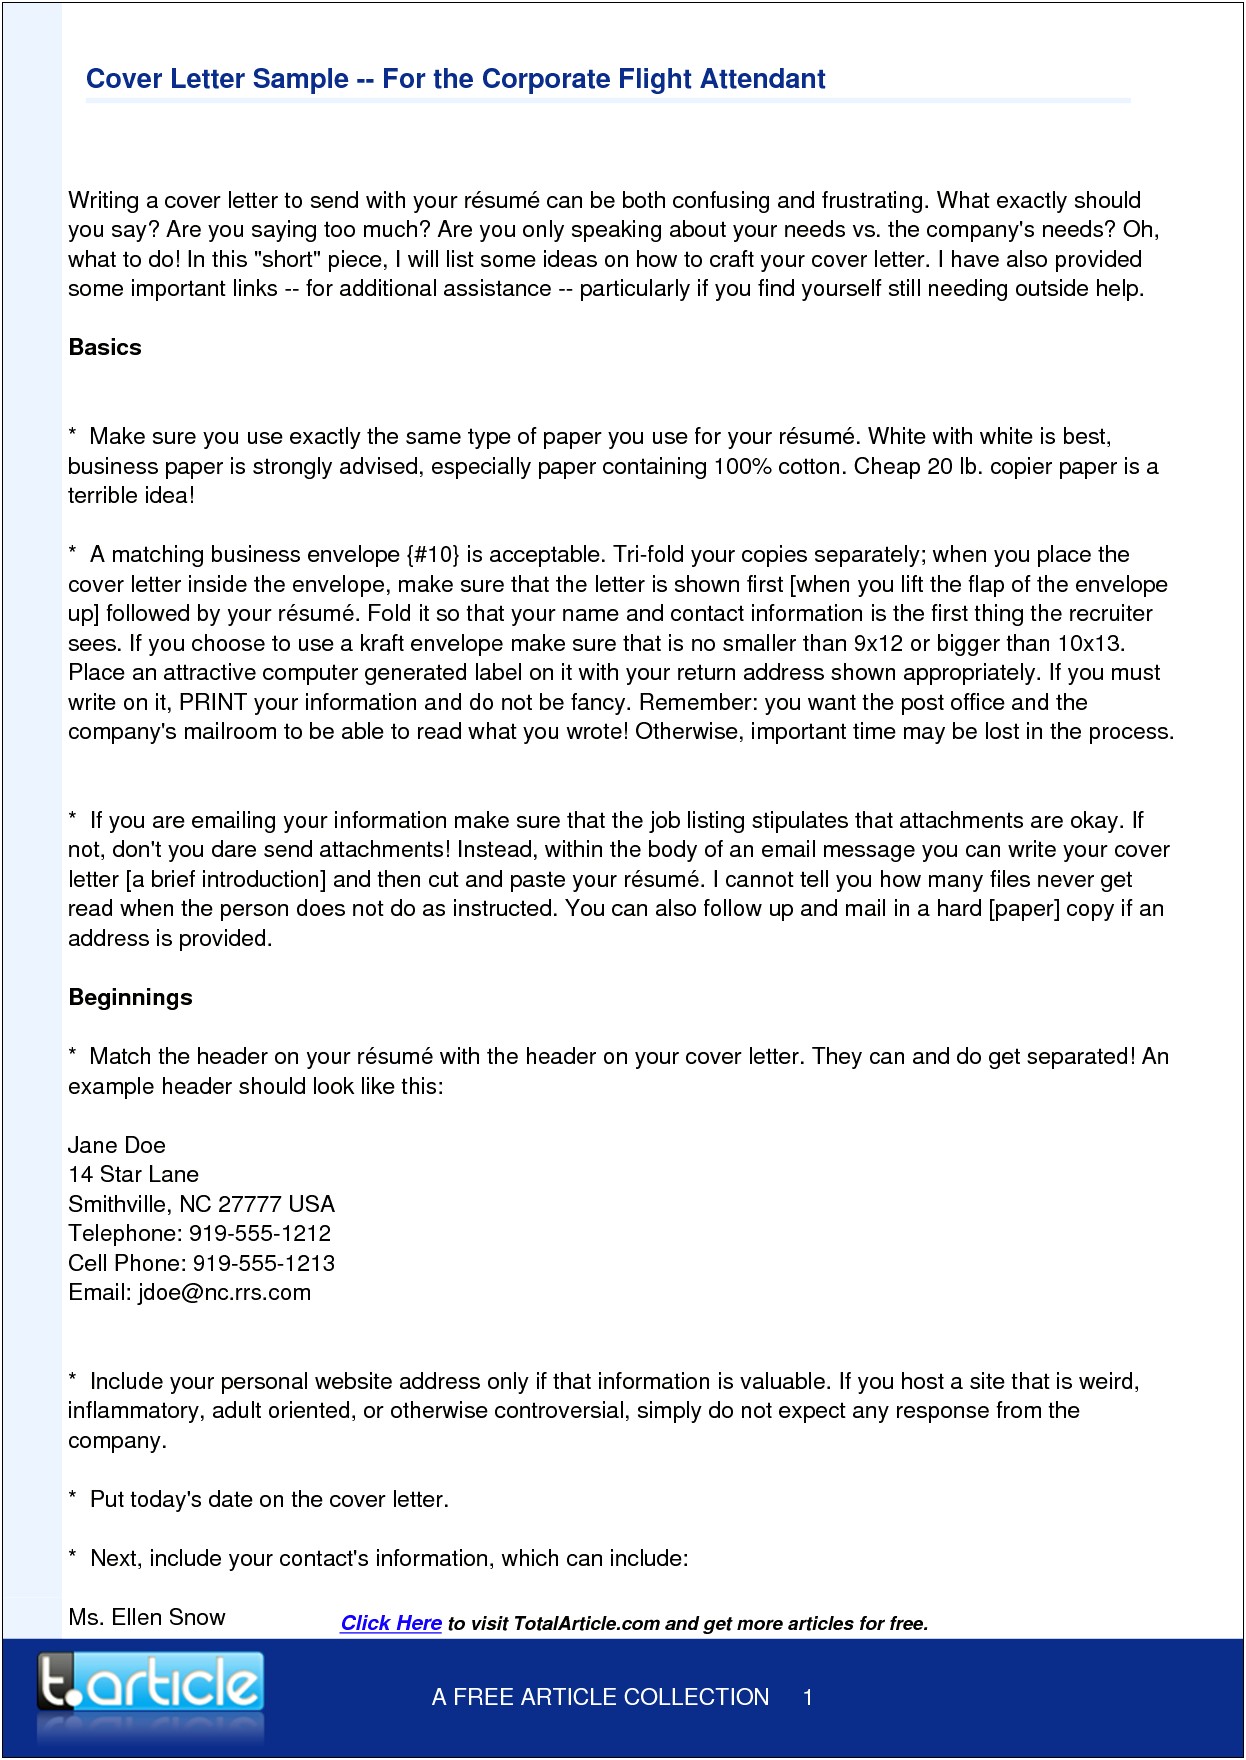 Sample Resume And Cover Letter For Flight Attendant